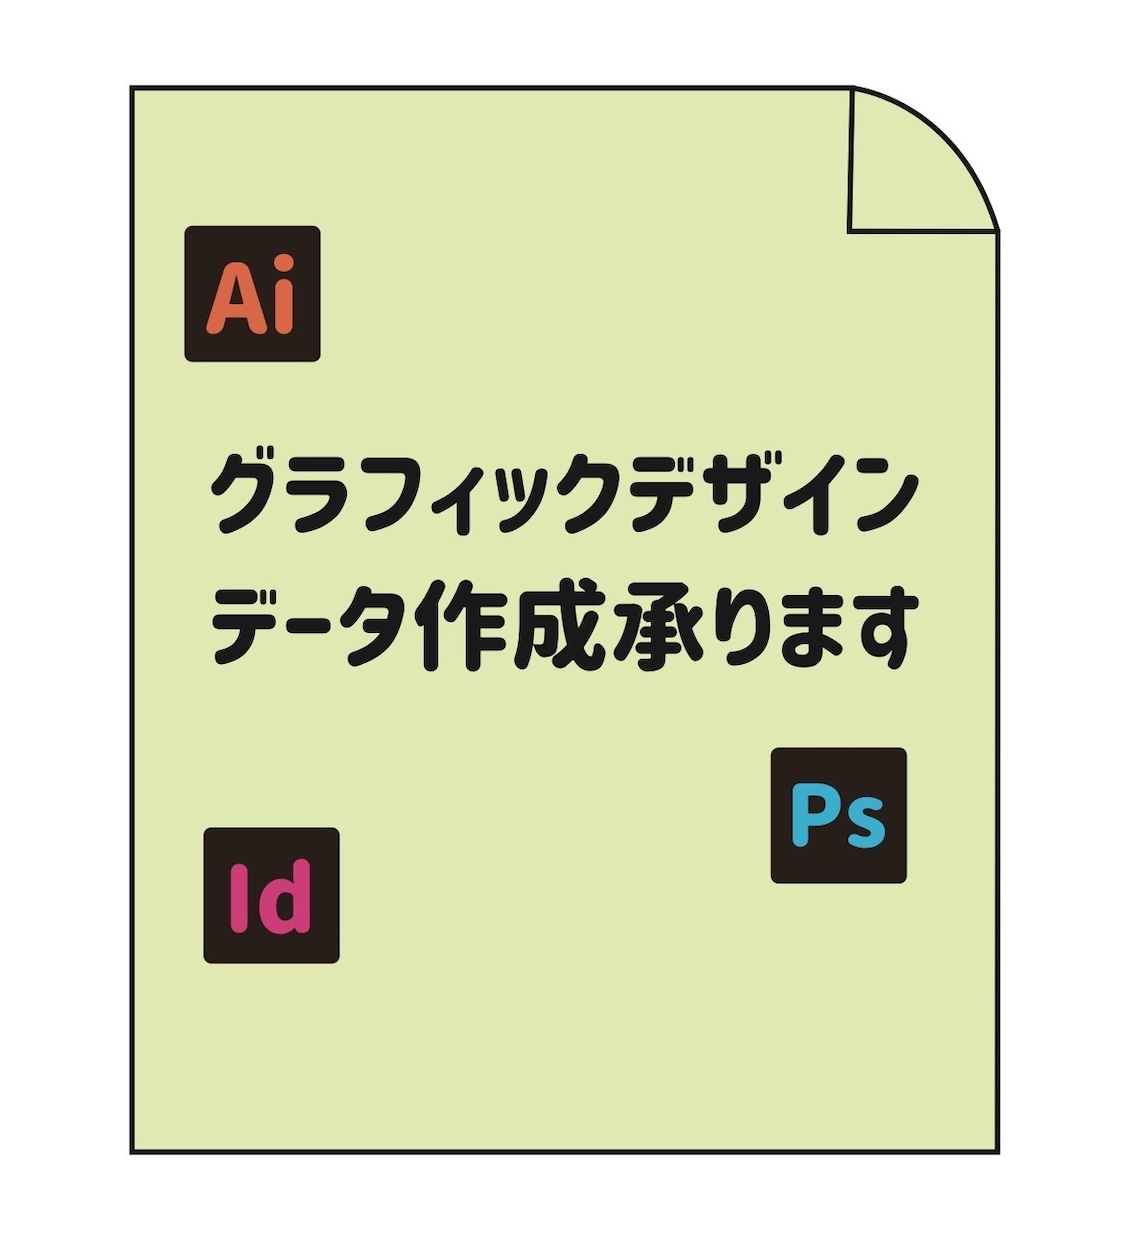 グラフィックデザイナーが広告デザインします ポスター、リーフレット、冊子デザイン・データ作成承ります。 イメージ1